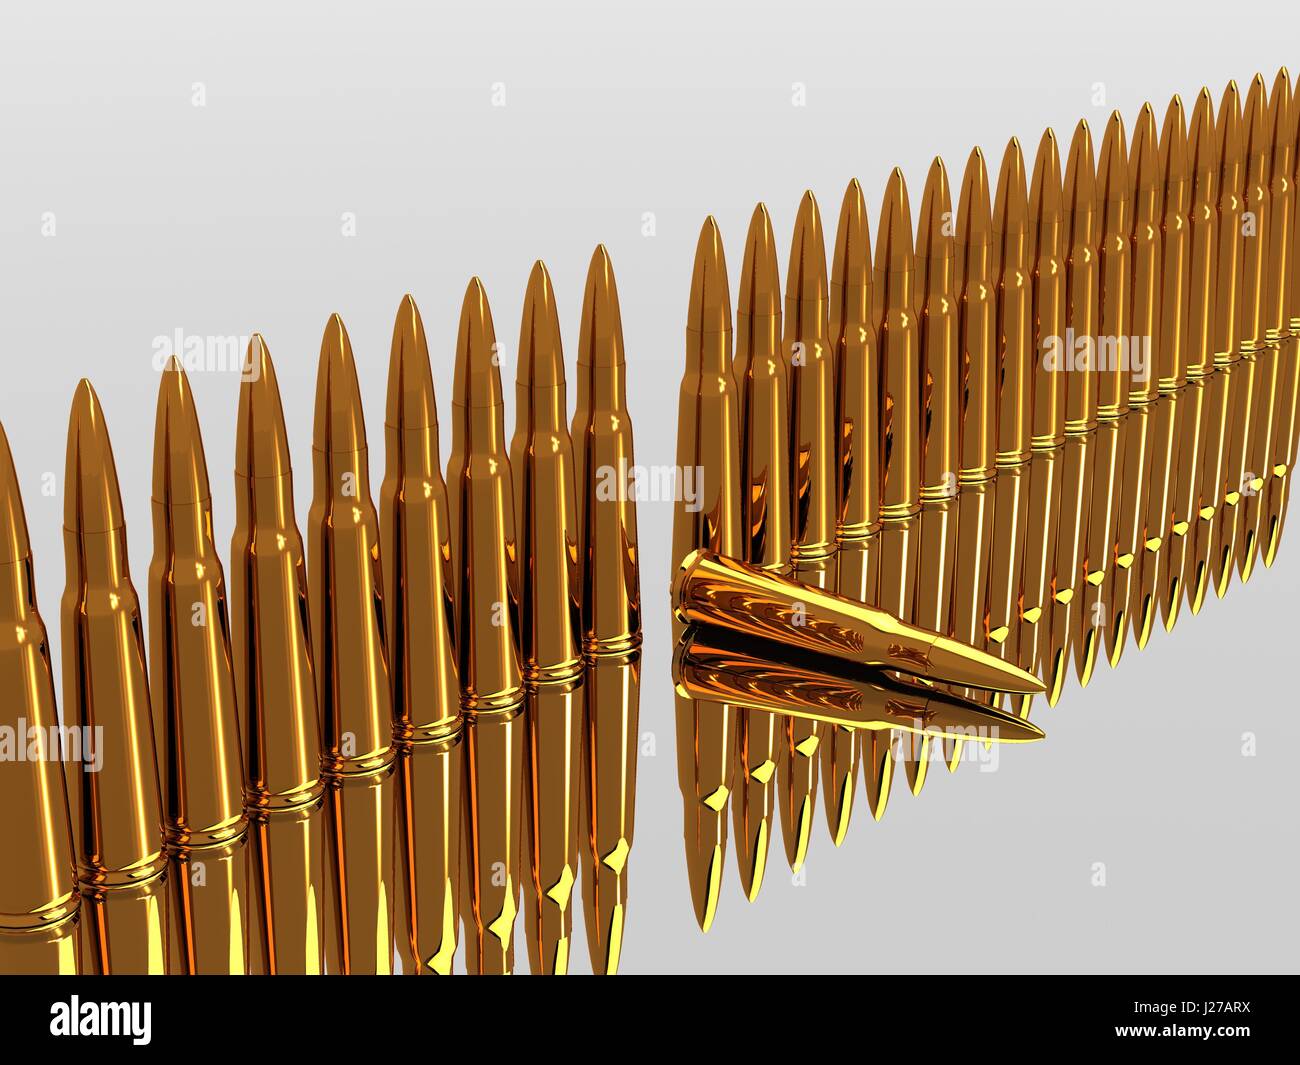 Bullets 9mm ammo row Stock Photo